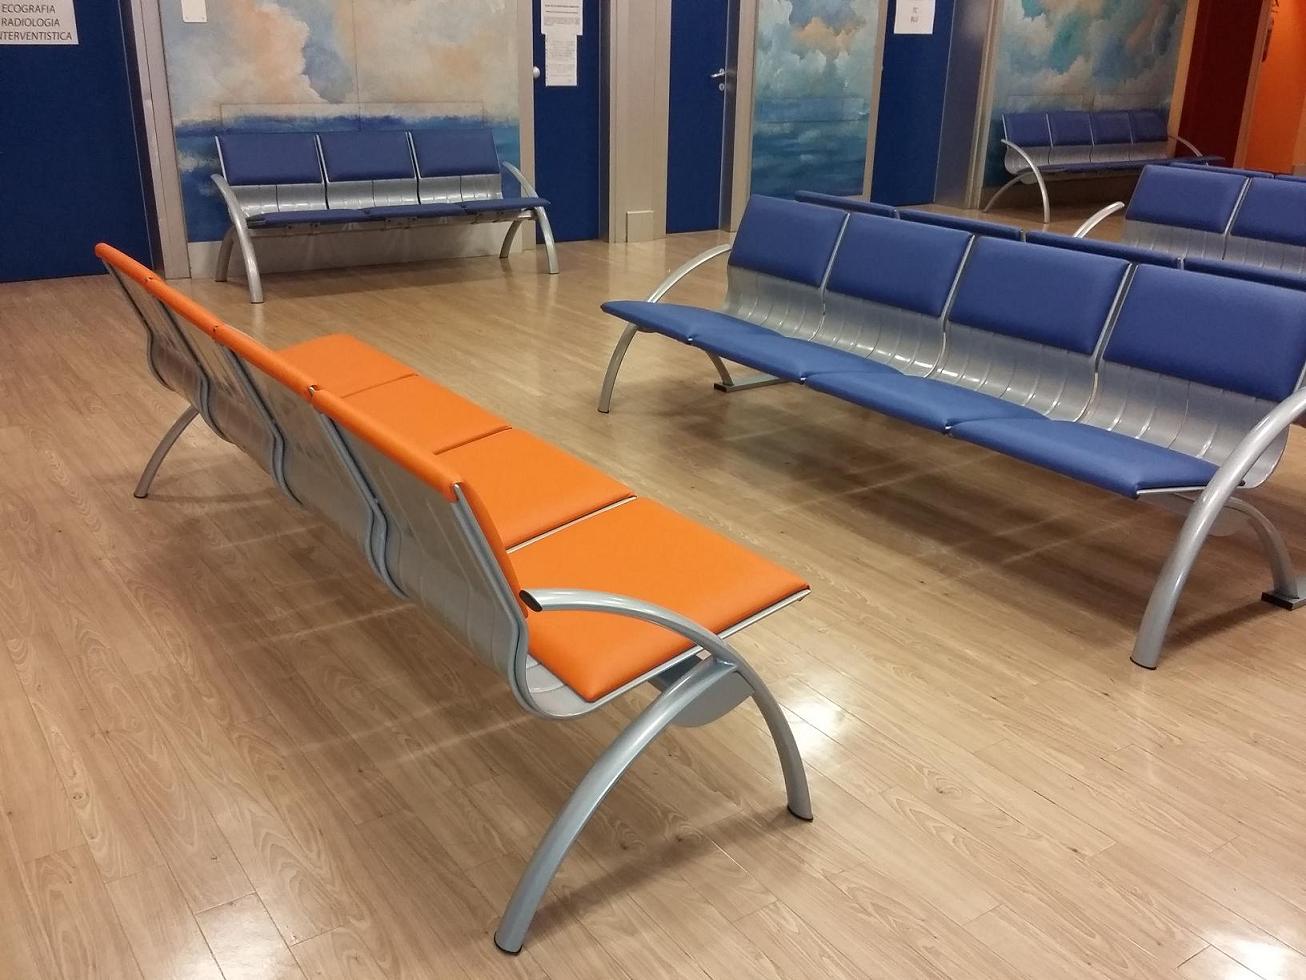 Wartezimmer im IOV-Krankenhaus - Padua